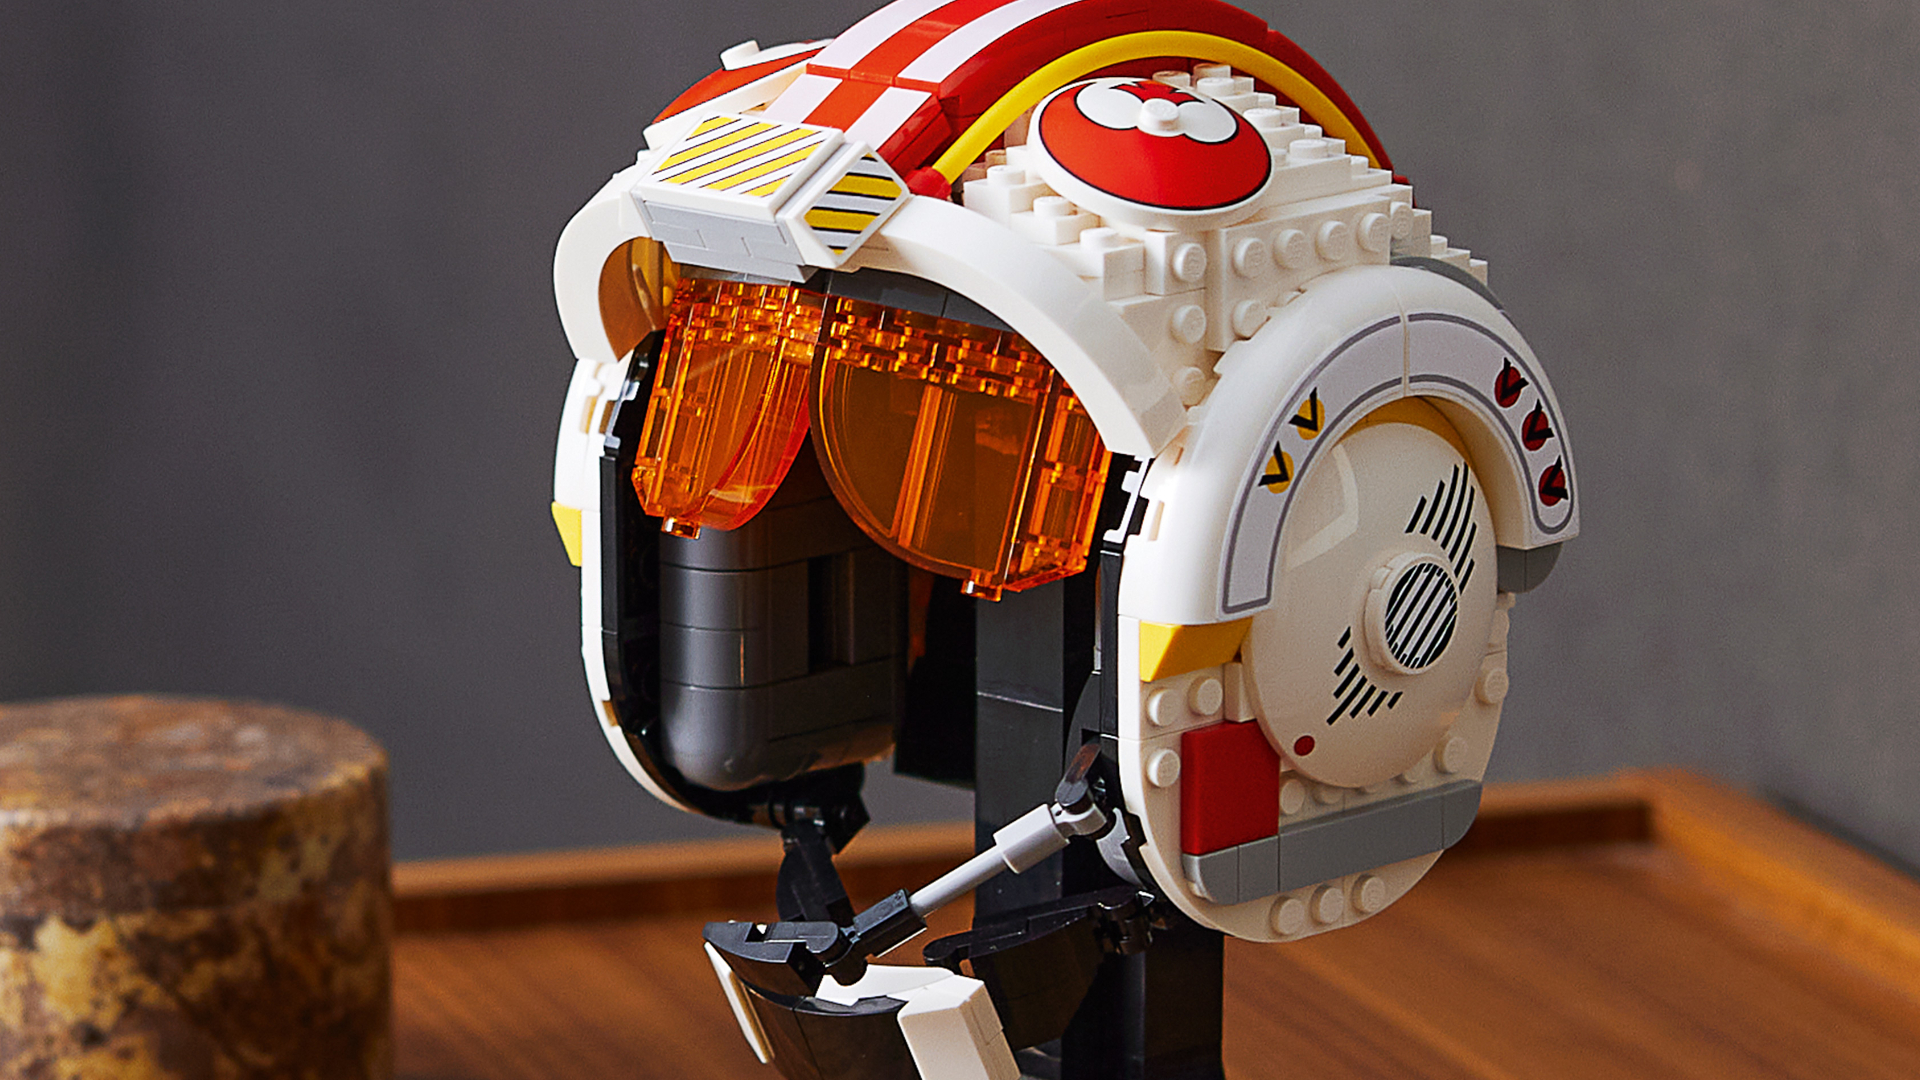 LEGO Luke Skywalker (Red Five) Helmet